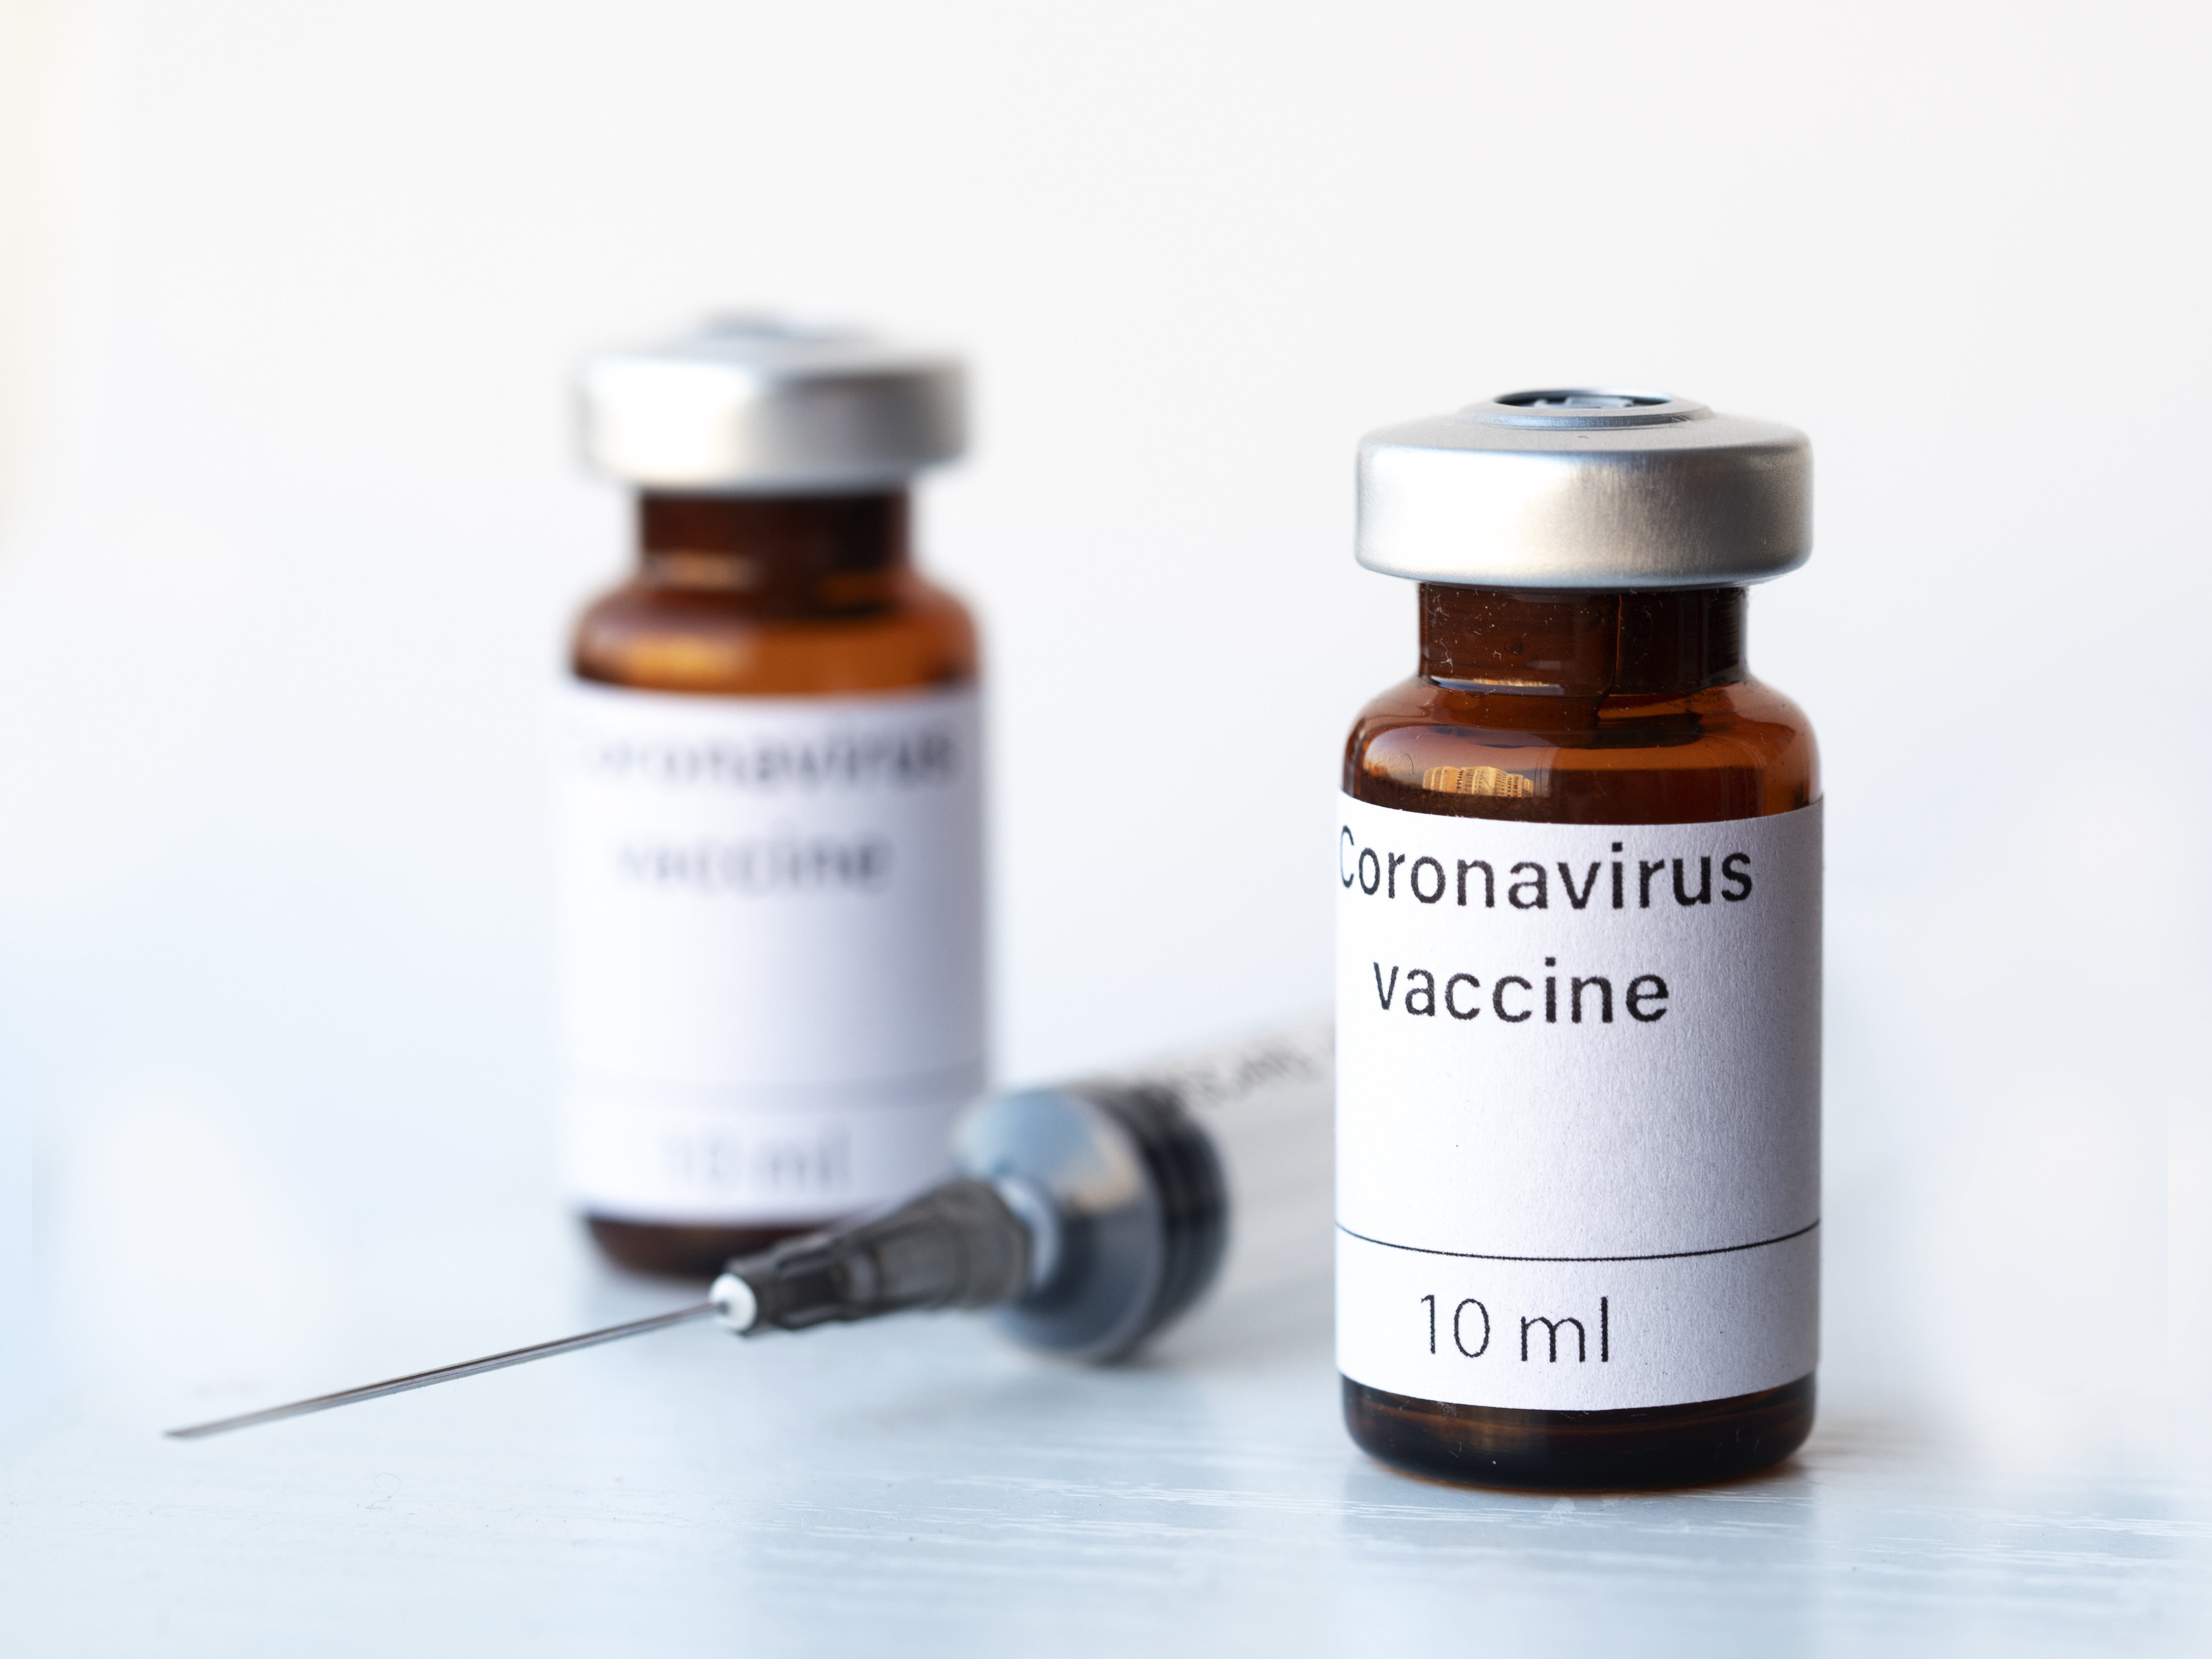 O veste bună de la OMS: Mai multe vaccinuri au ajuns în faza 3 de testare şi niciunul nu a eşuat până acum